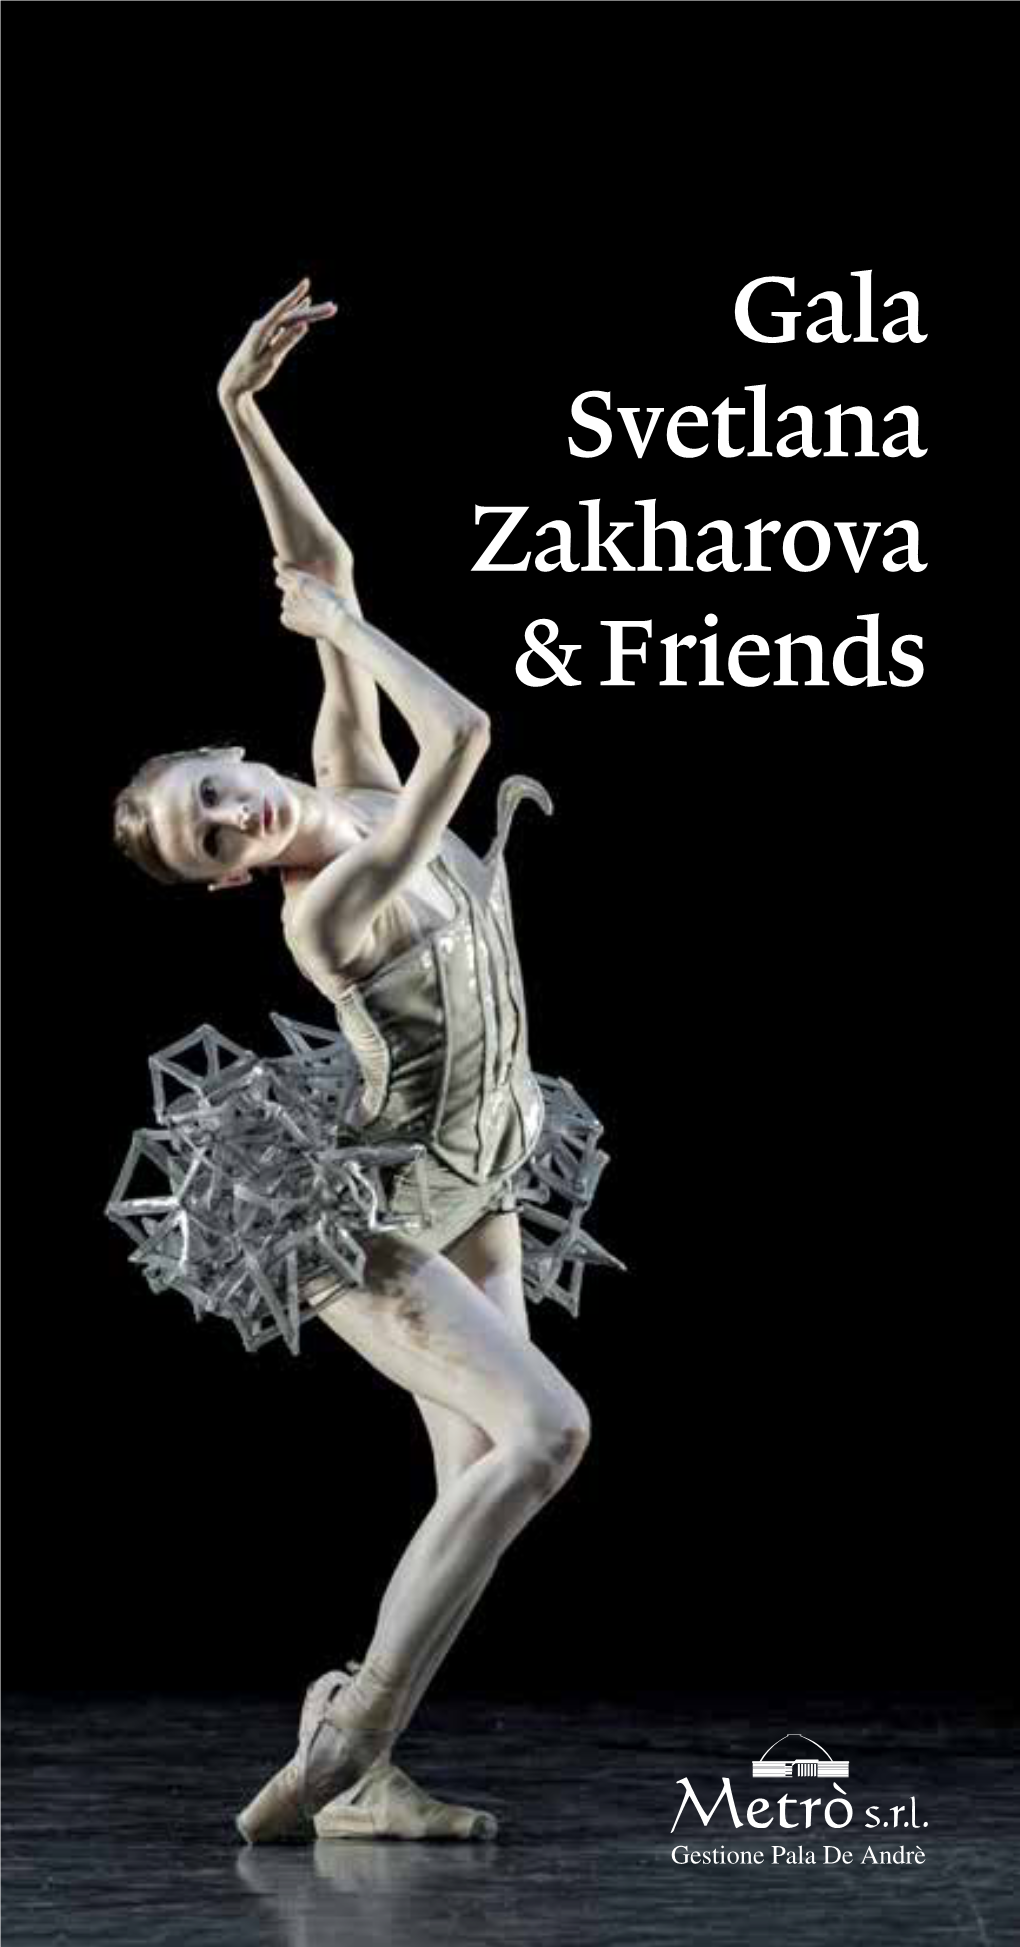 Gala Svetlana Zakharova & Friends